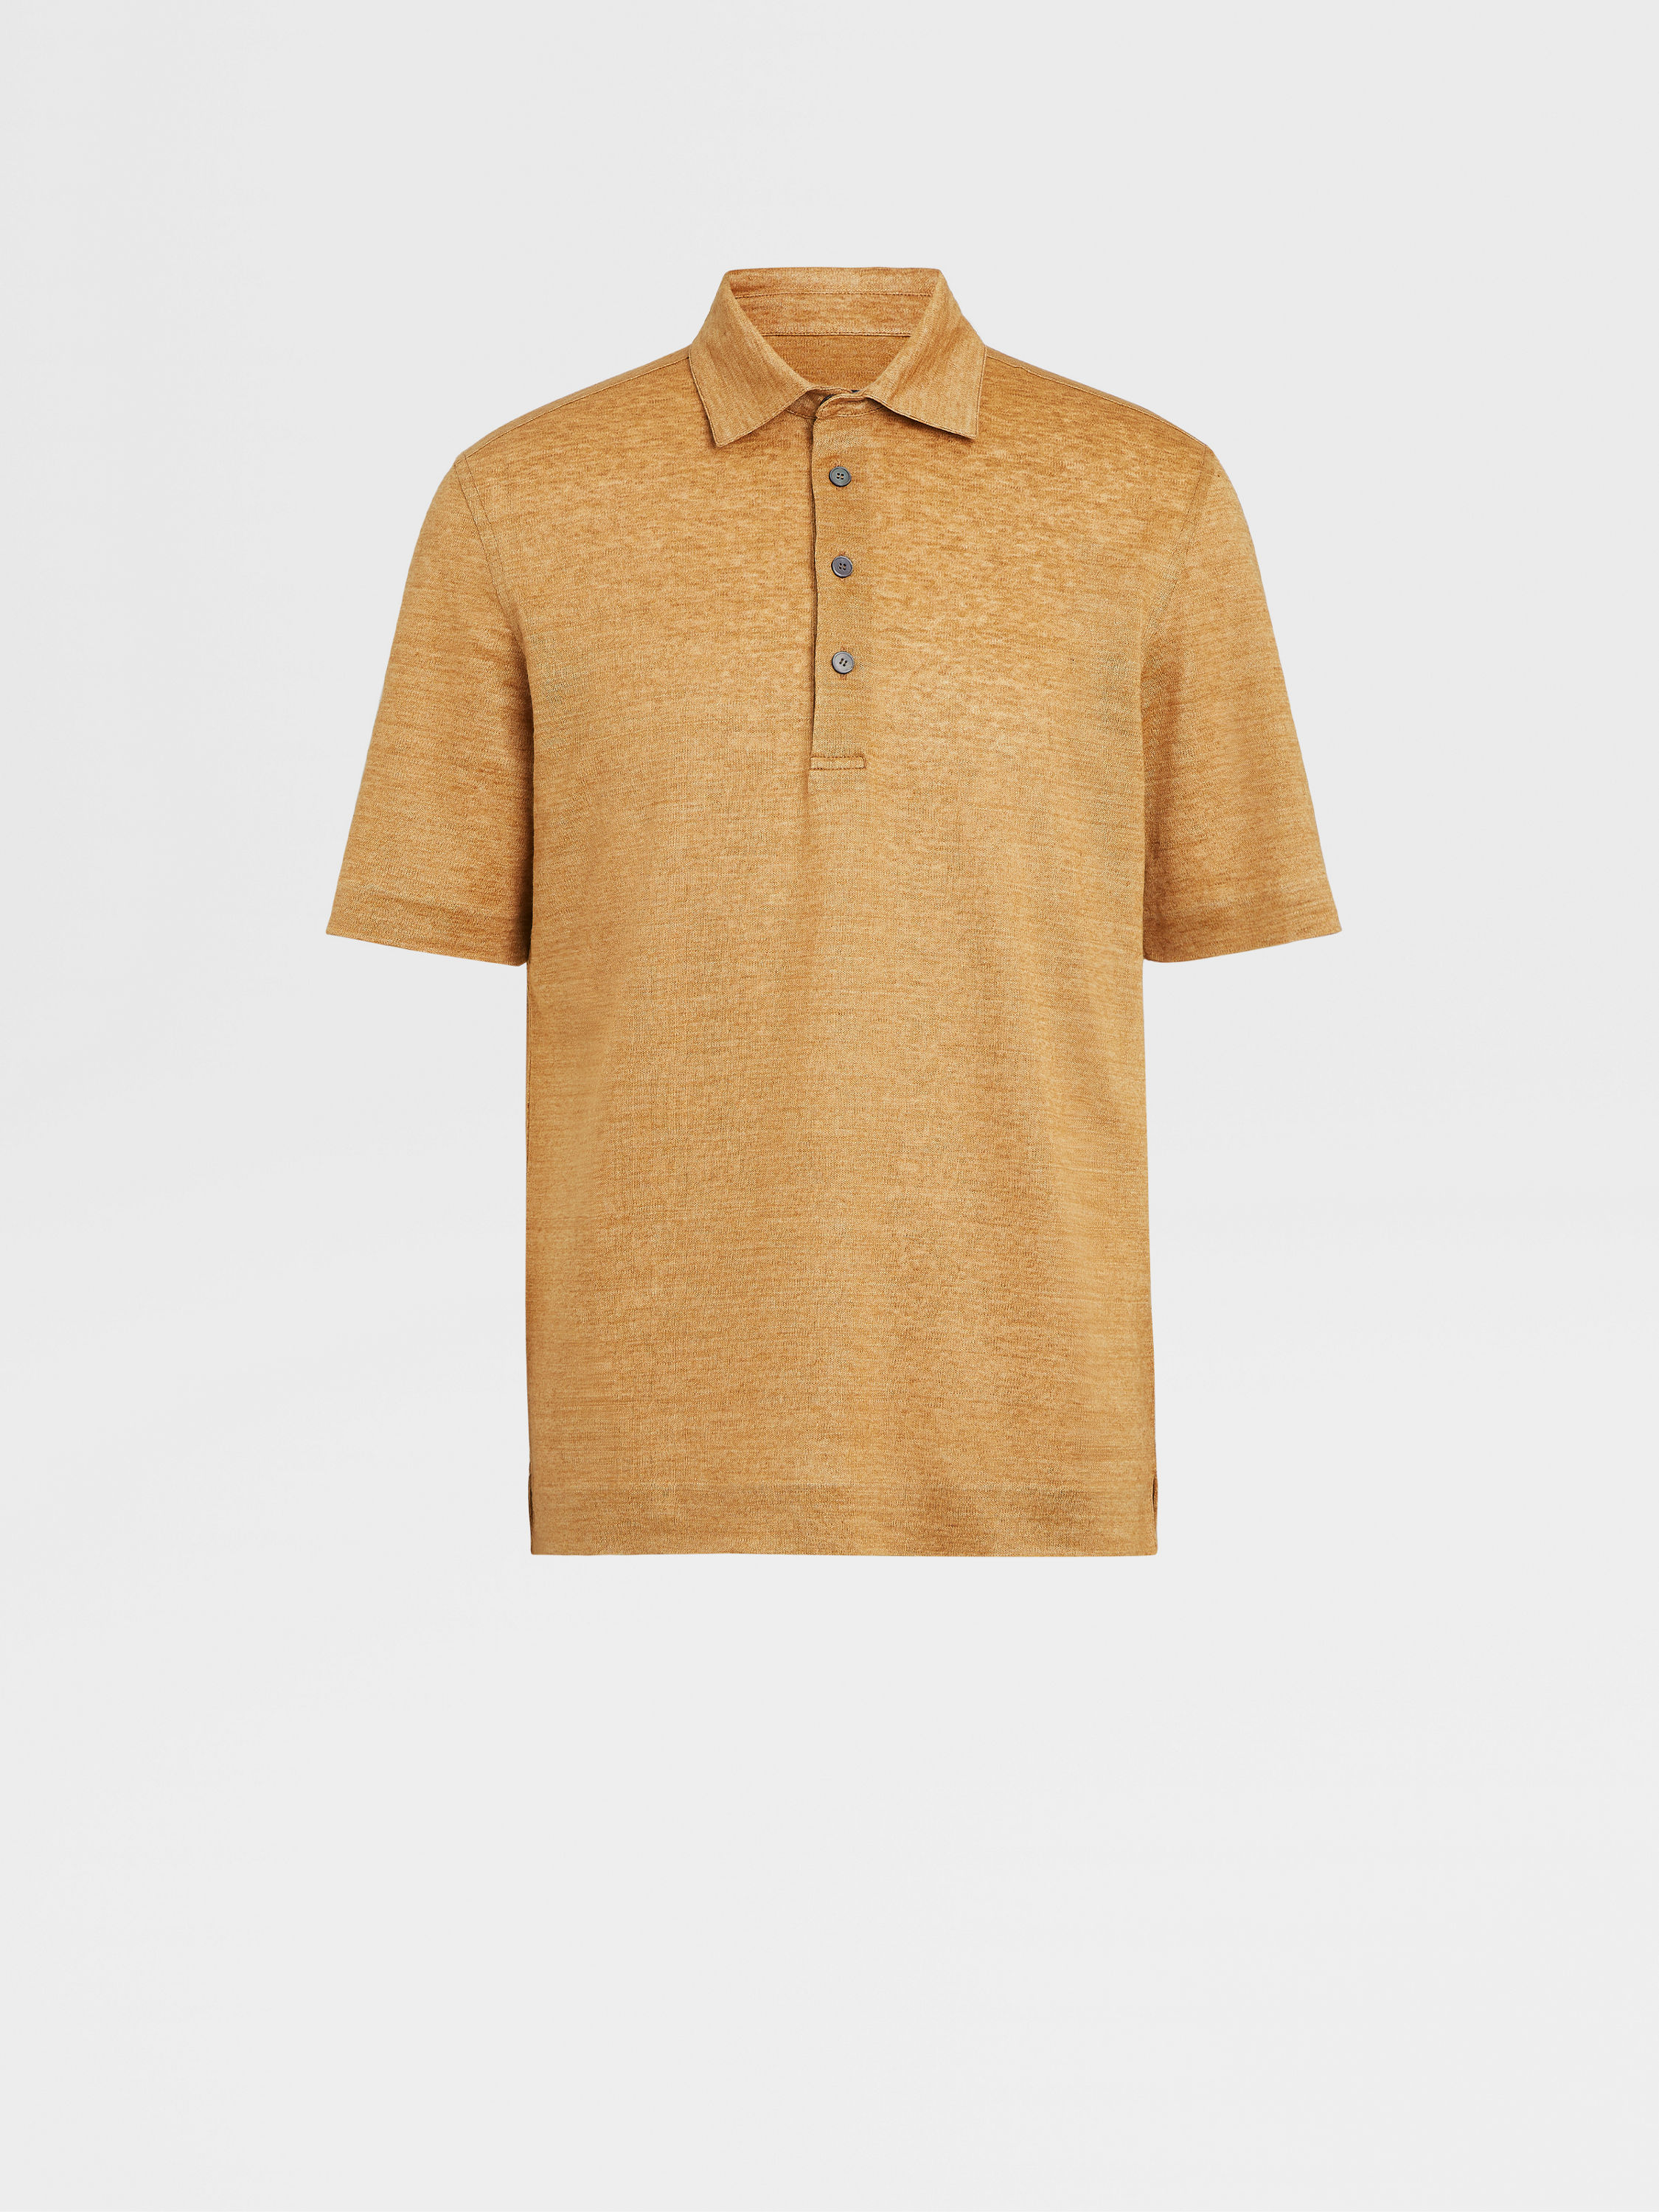 Peach Color Linen Polo Shirt FW23 27905011 | Zegna GB